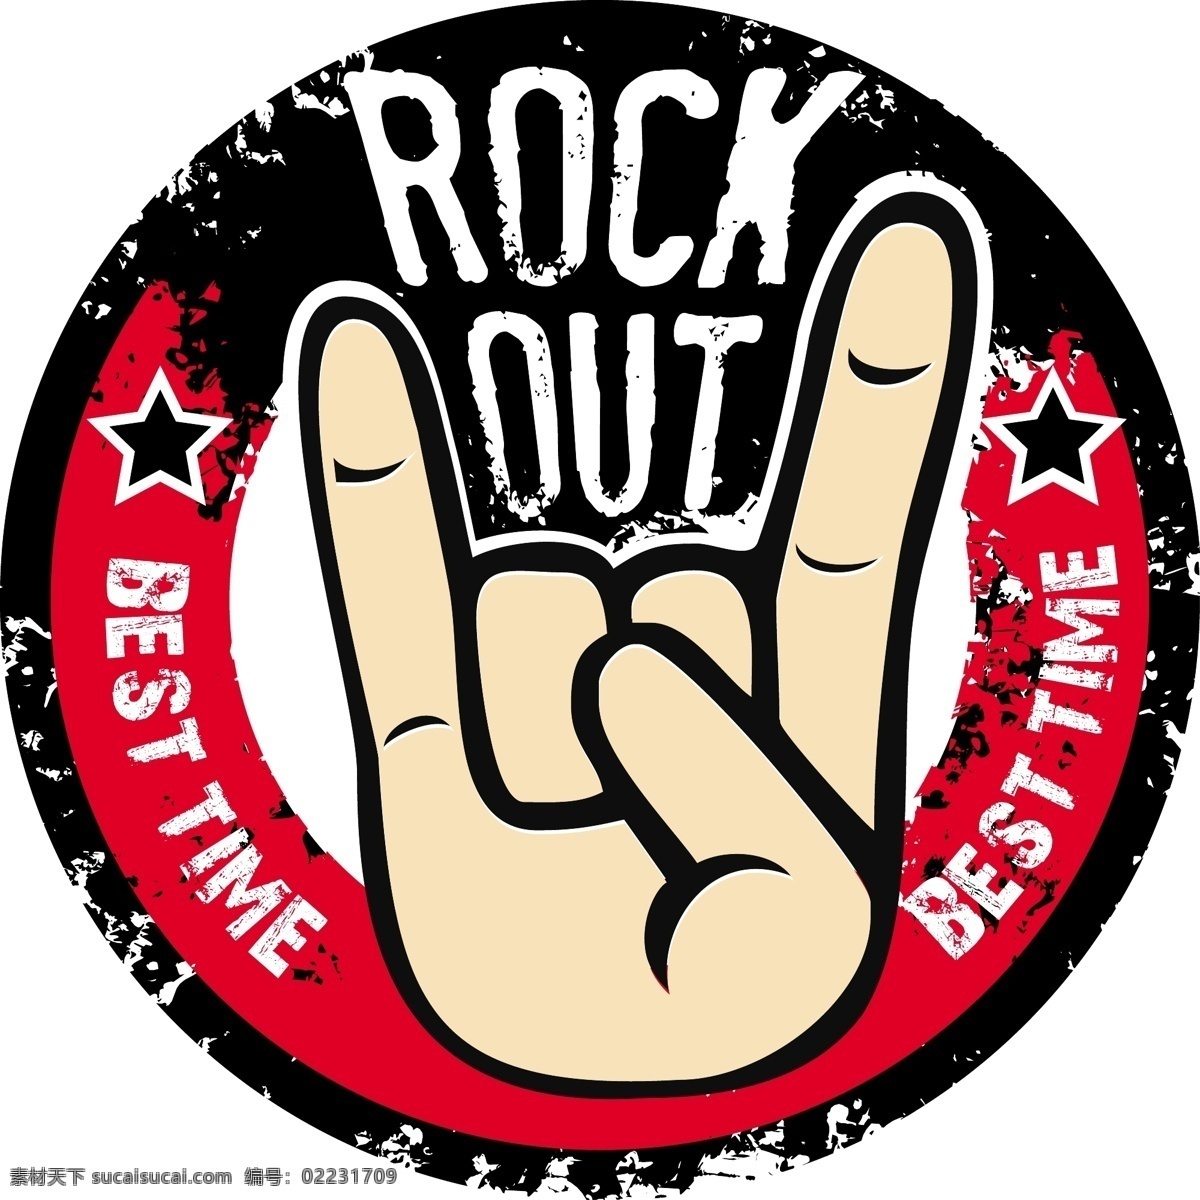 摇滚 摇滚乐 摇滚乐队 手势 字母 手形 手指 rock 音乐 摇滚海报 摇滚标志 舞蹈音乐 文化艺术